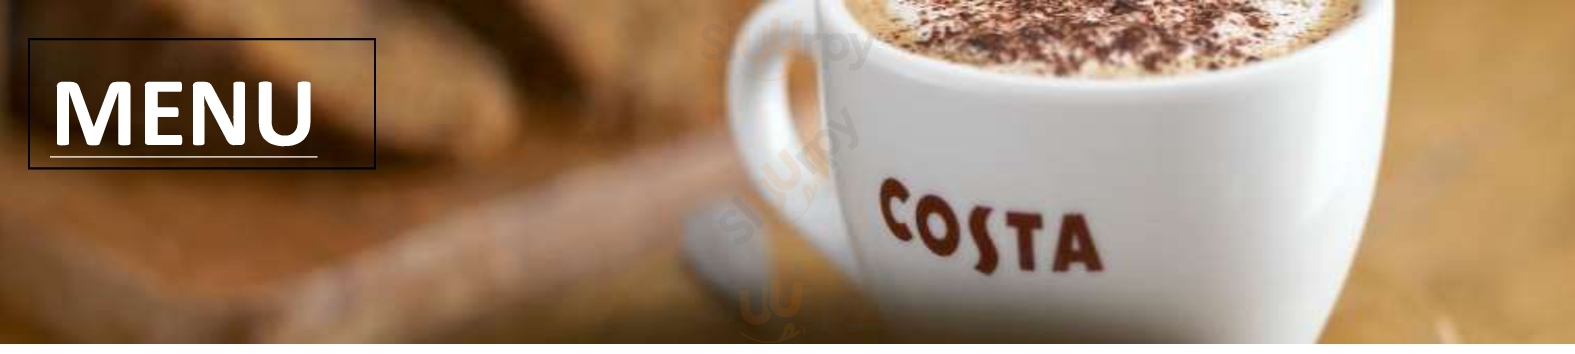 Costa Coffee Oban Menu - 1